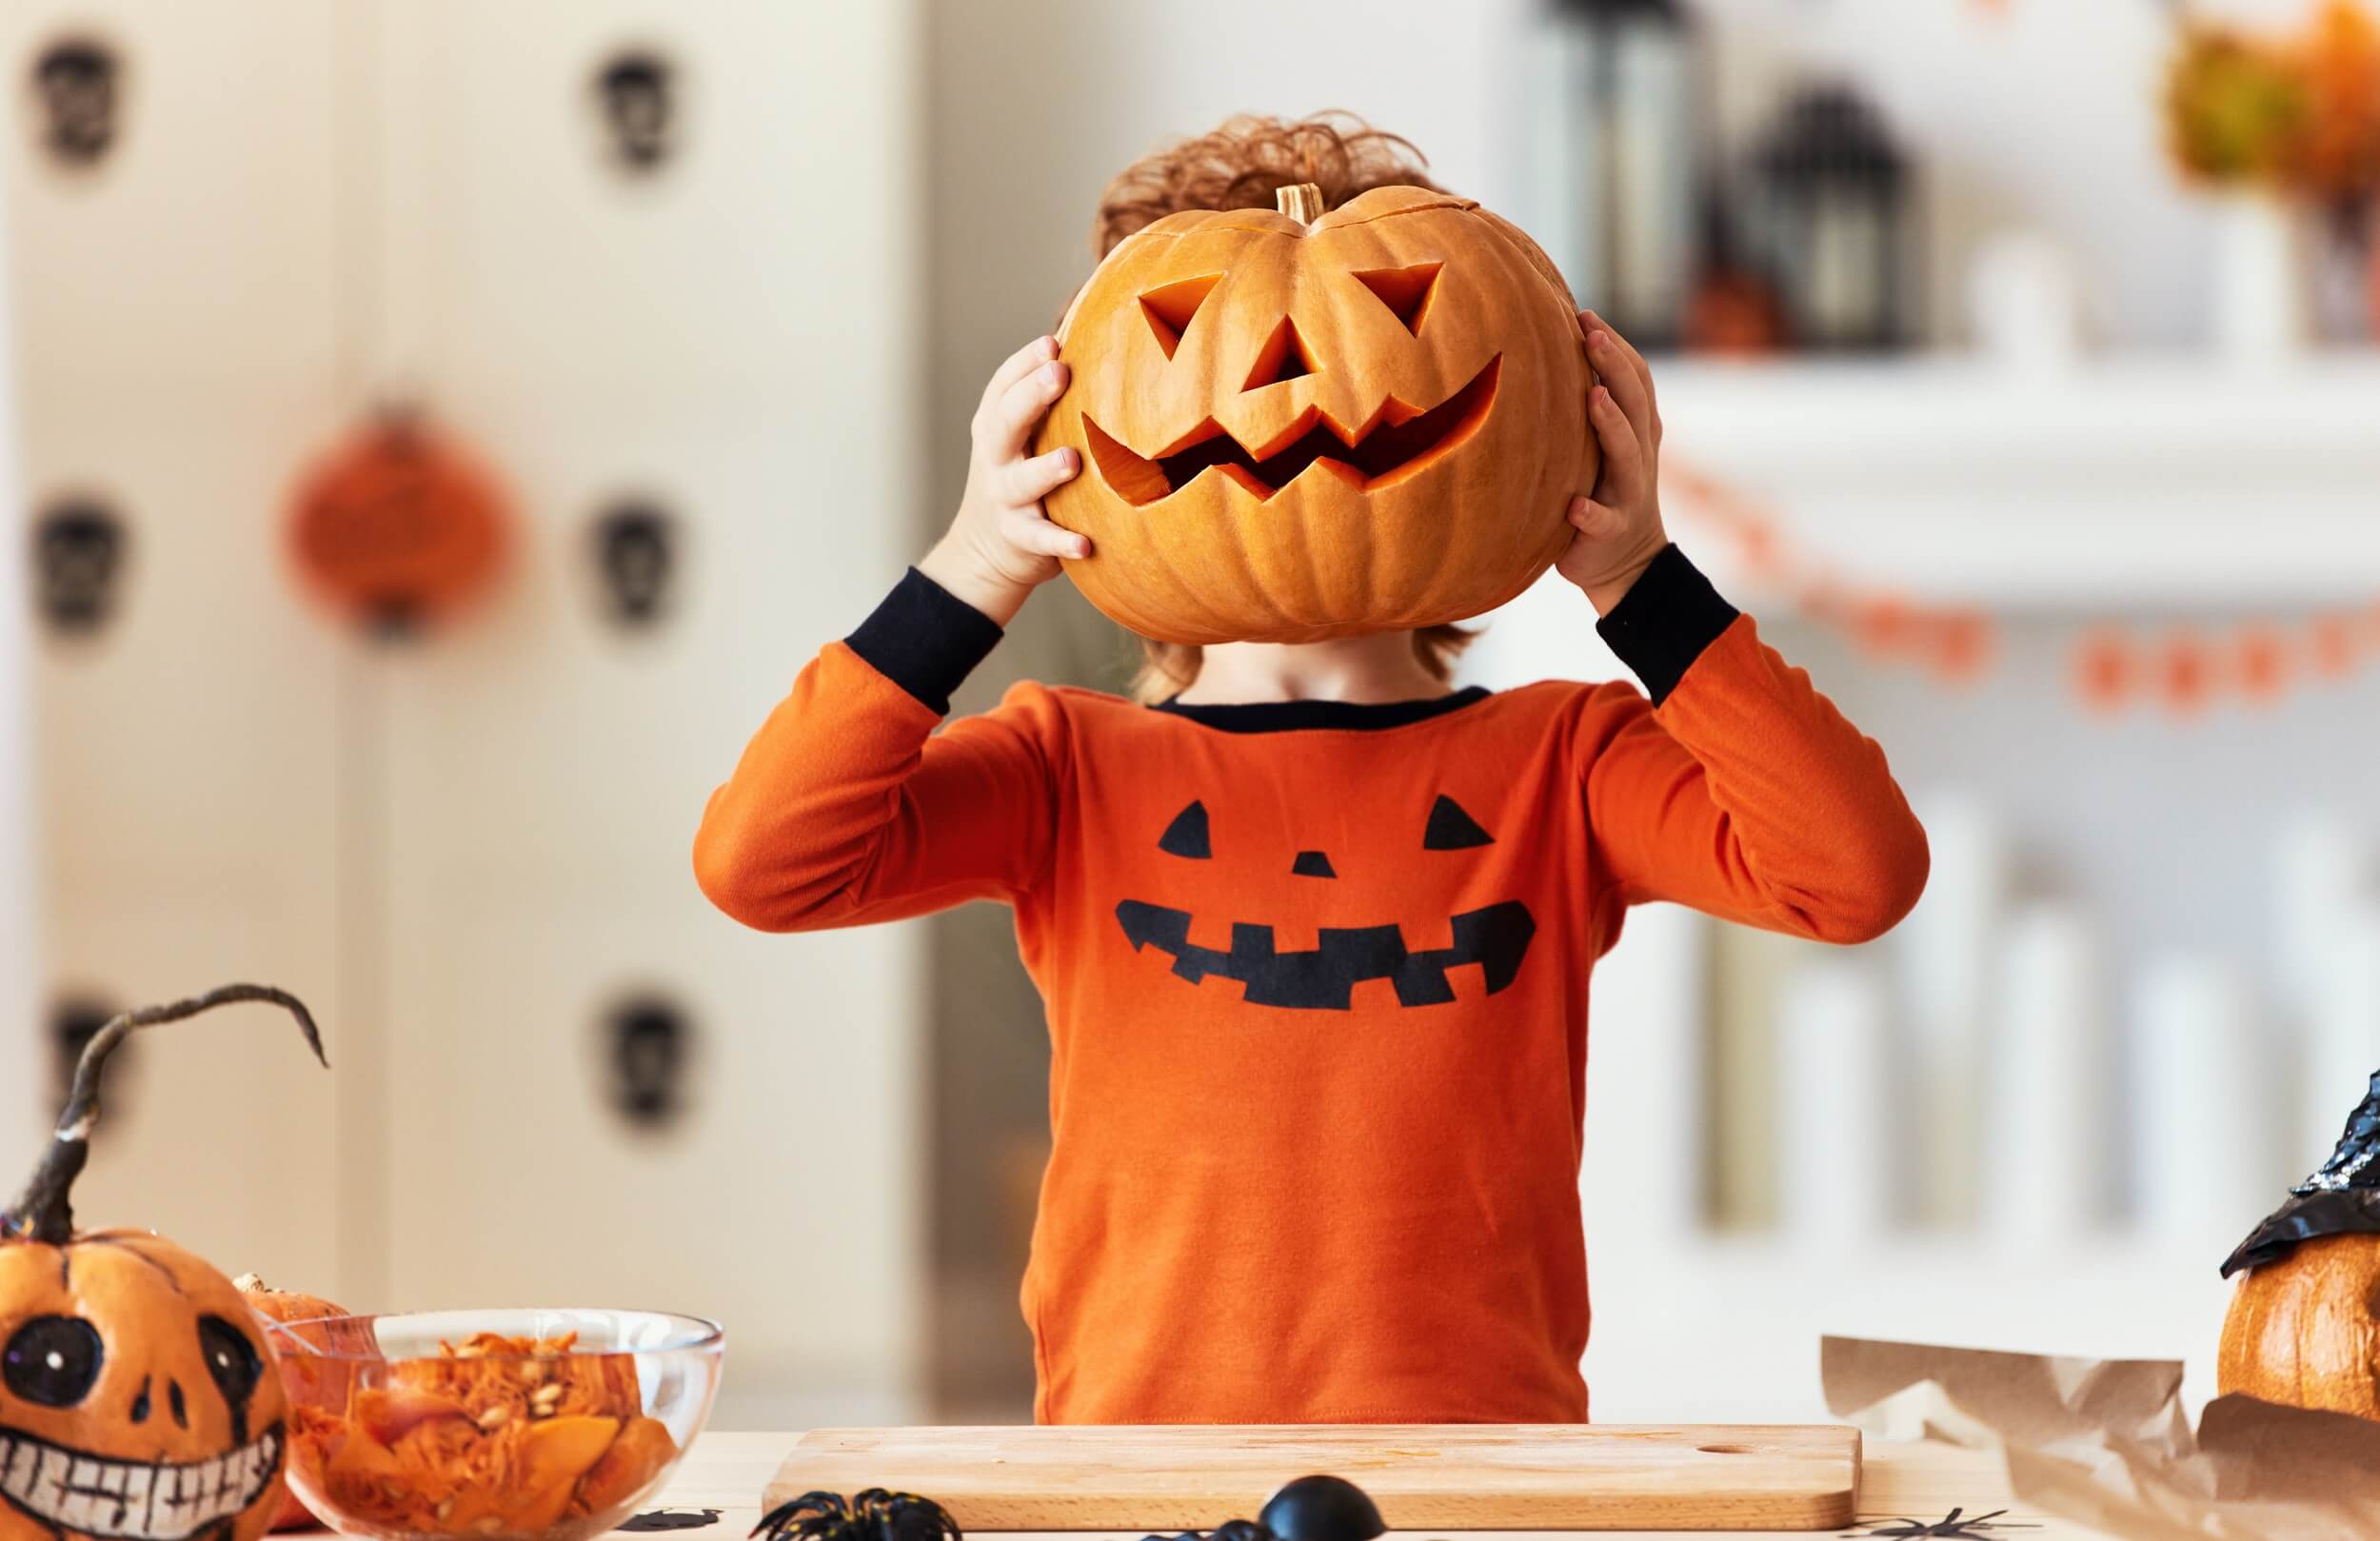 A child becomes a pumpkin monster at halloween